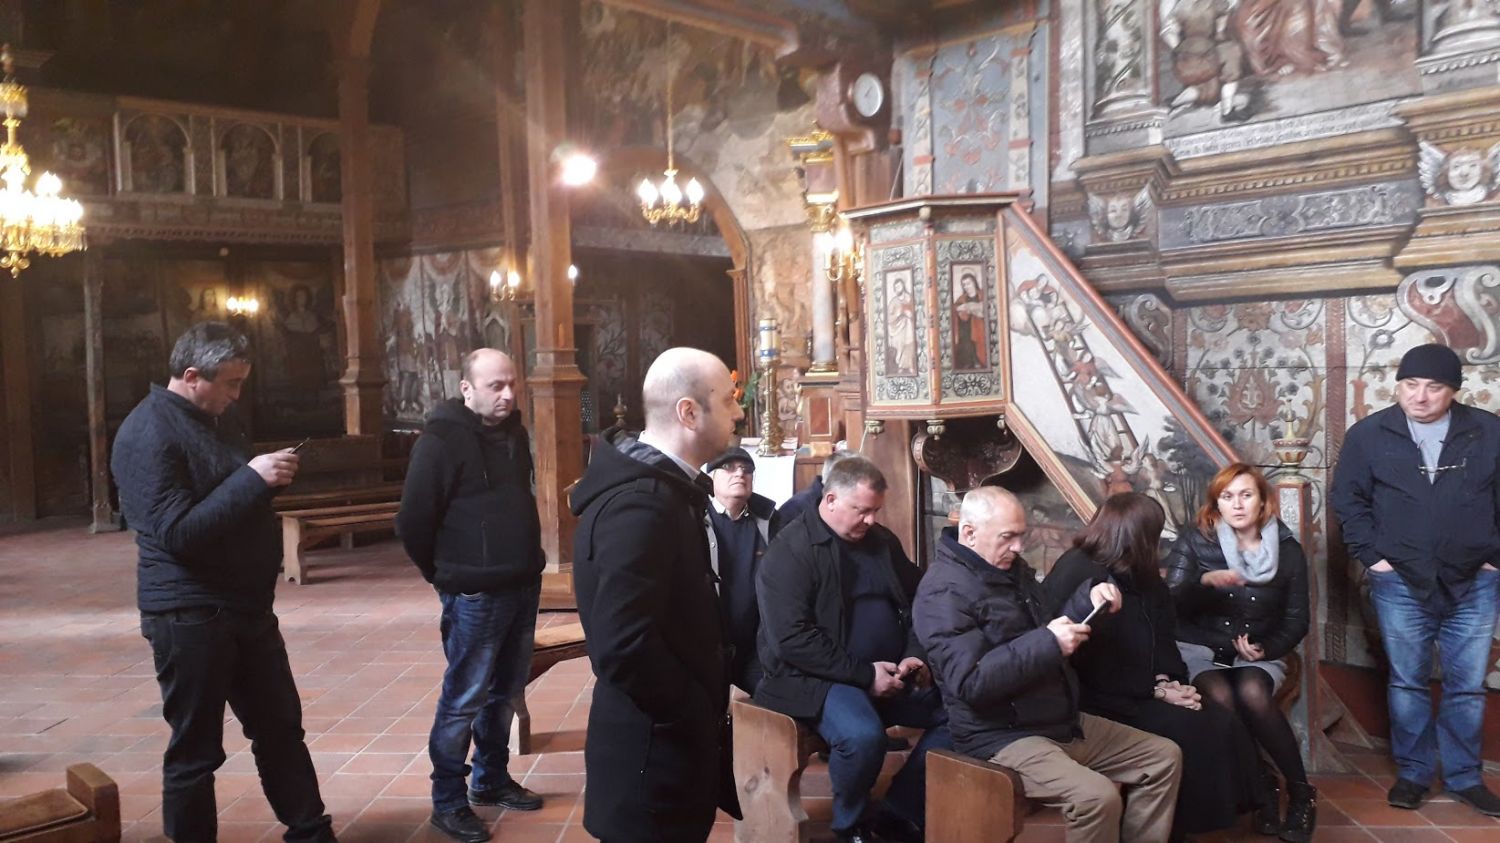 Na zdjęciu widać grupę osób w zabytkowym kościele. Część osób stoi i przygląda się freskom na ścianach, inne siedzą w ławach kościelnych.